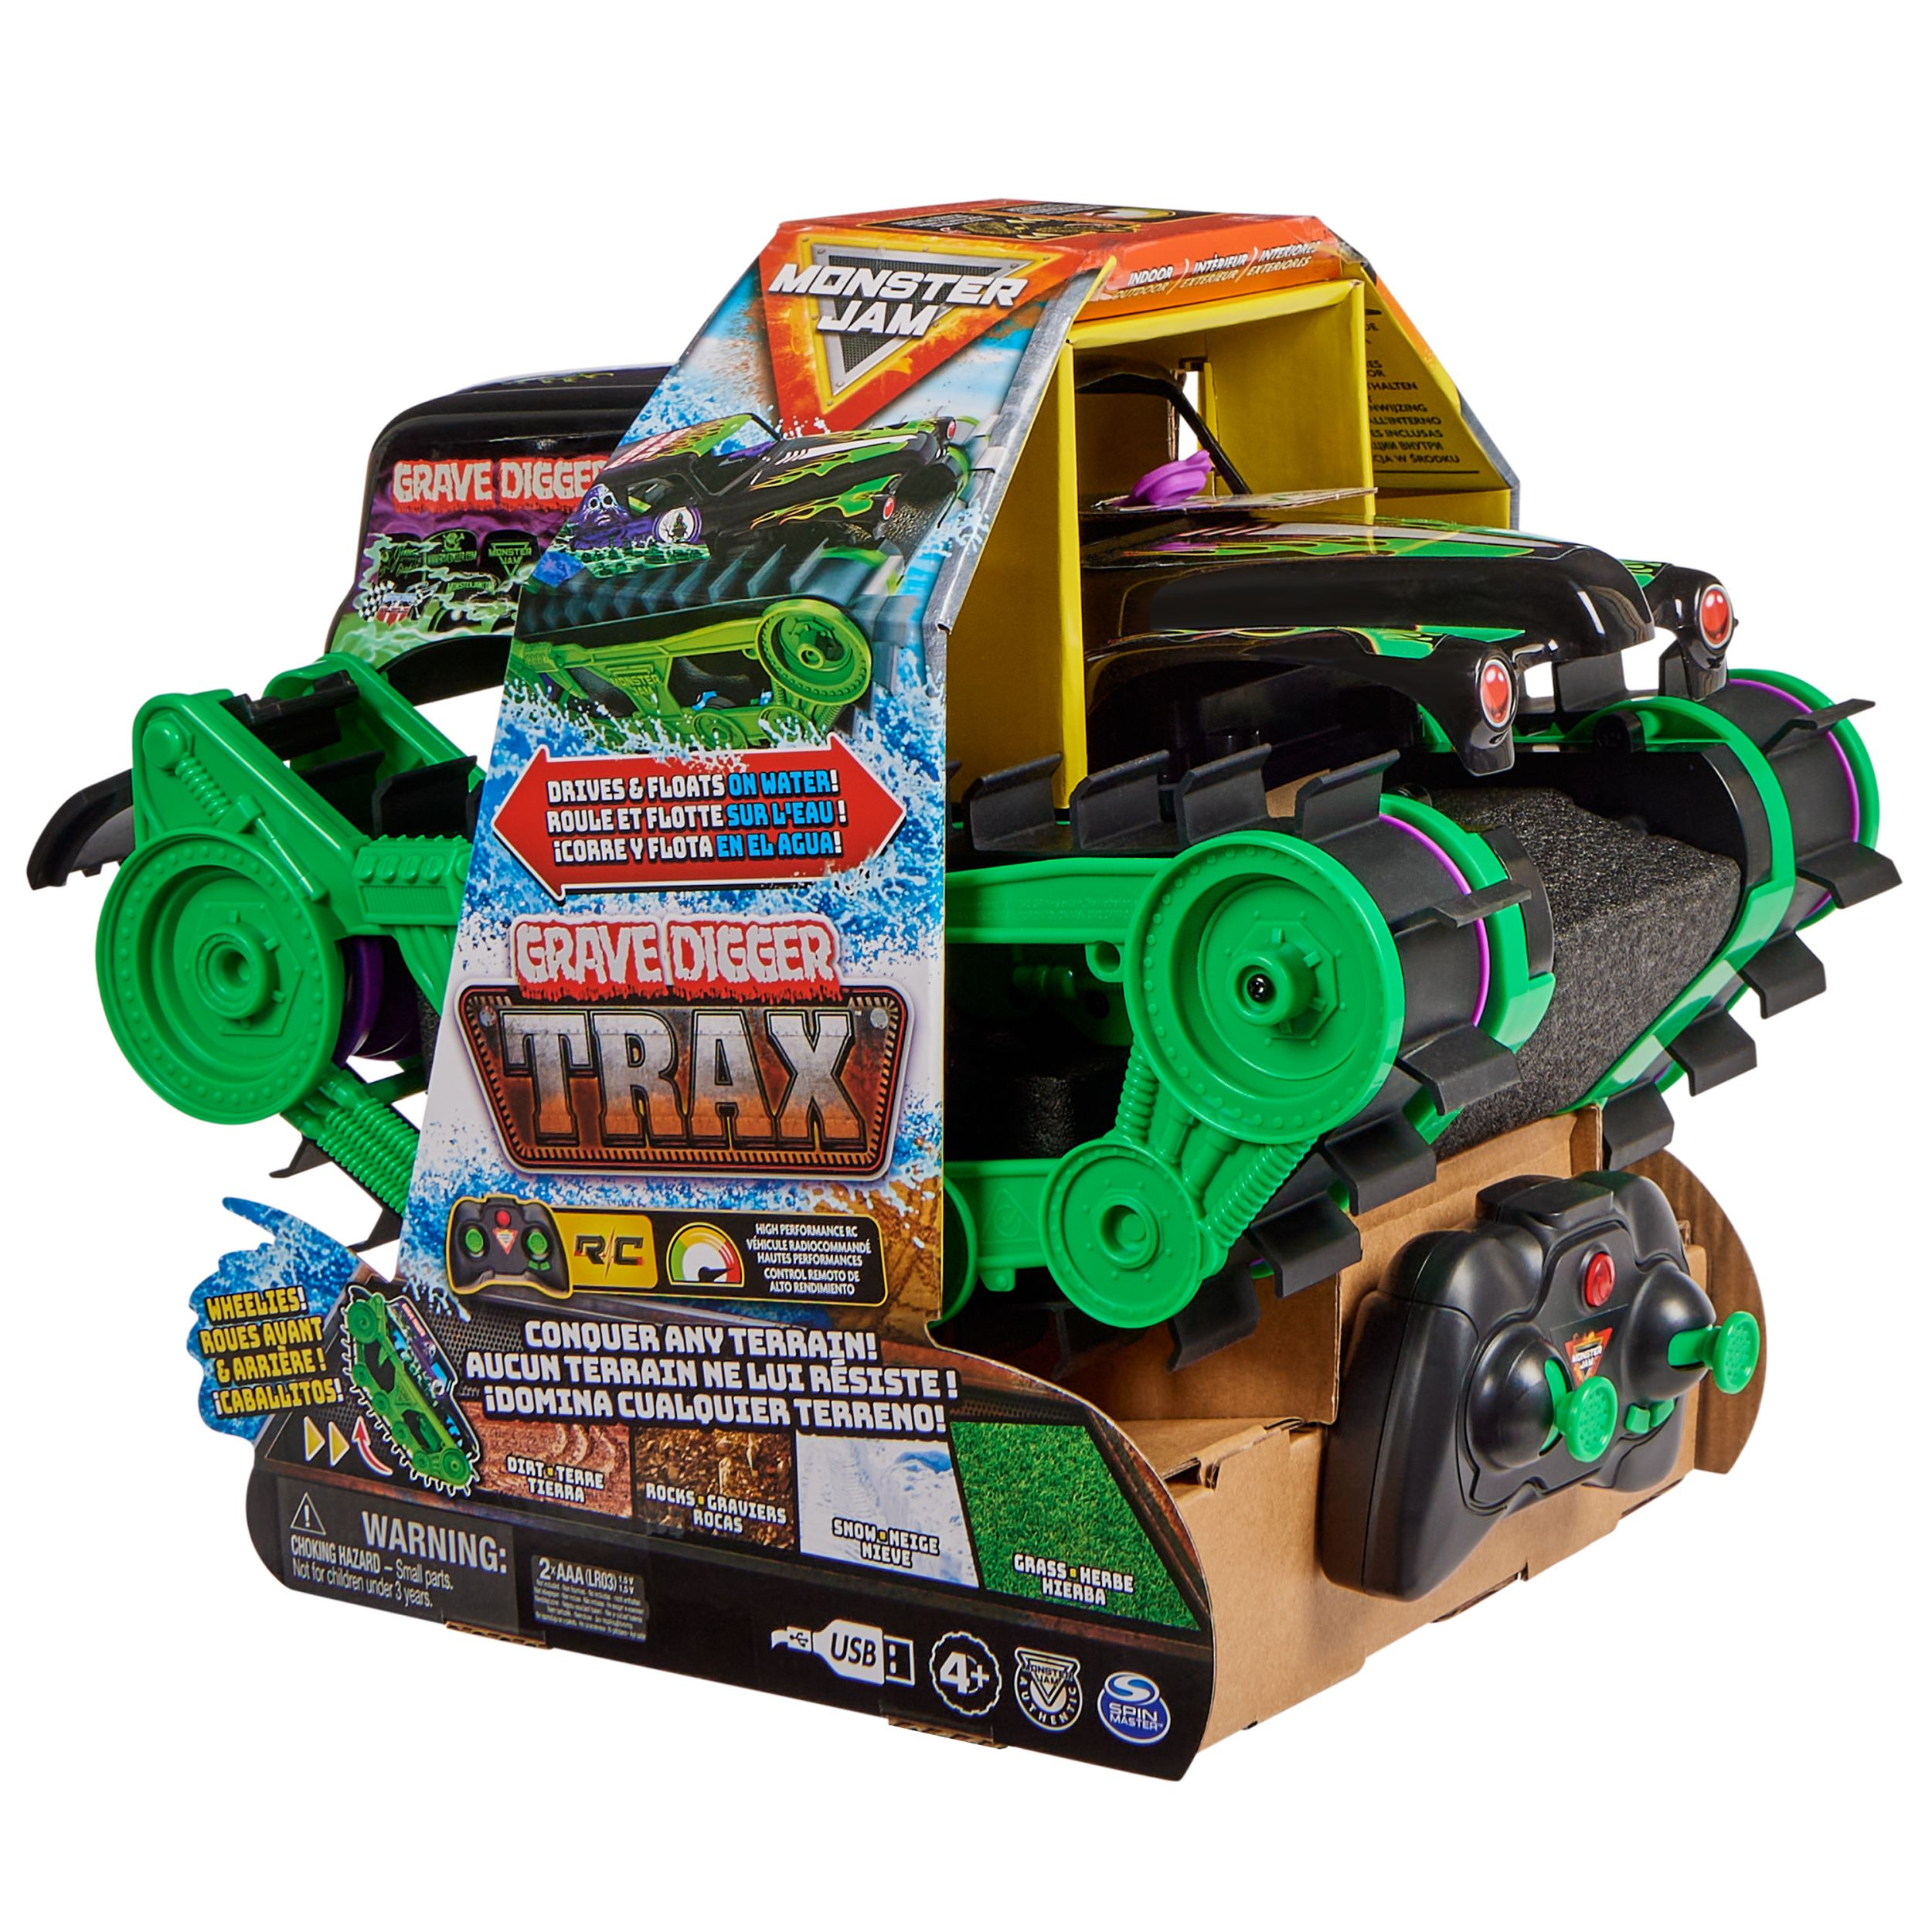 Spin Master Monster Jam Remote Control Monster Truck, Grave Digger 1:2